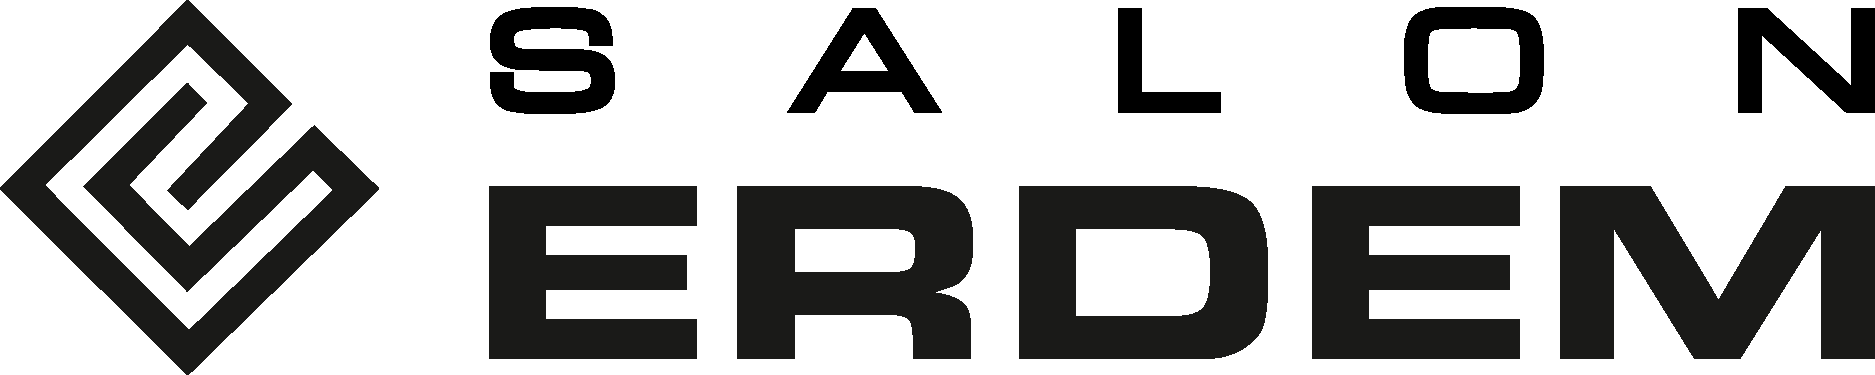 Salon Erdem Logo Vector